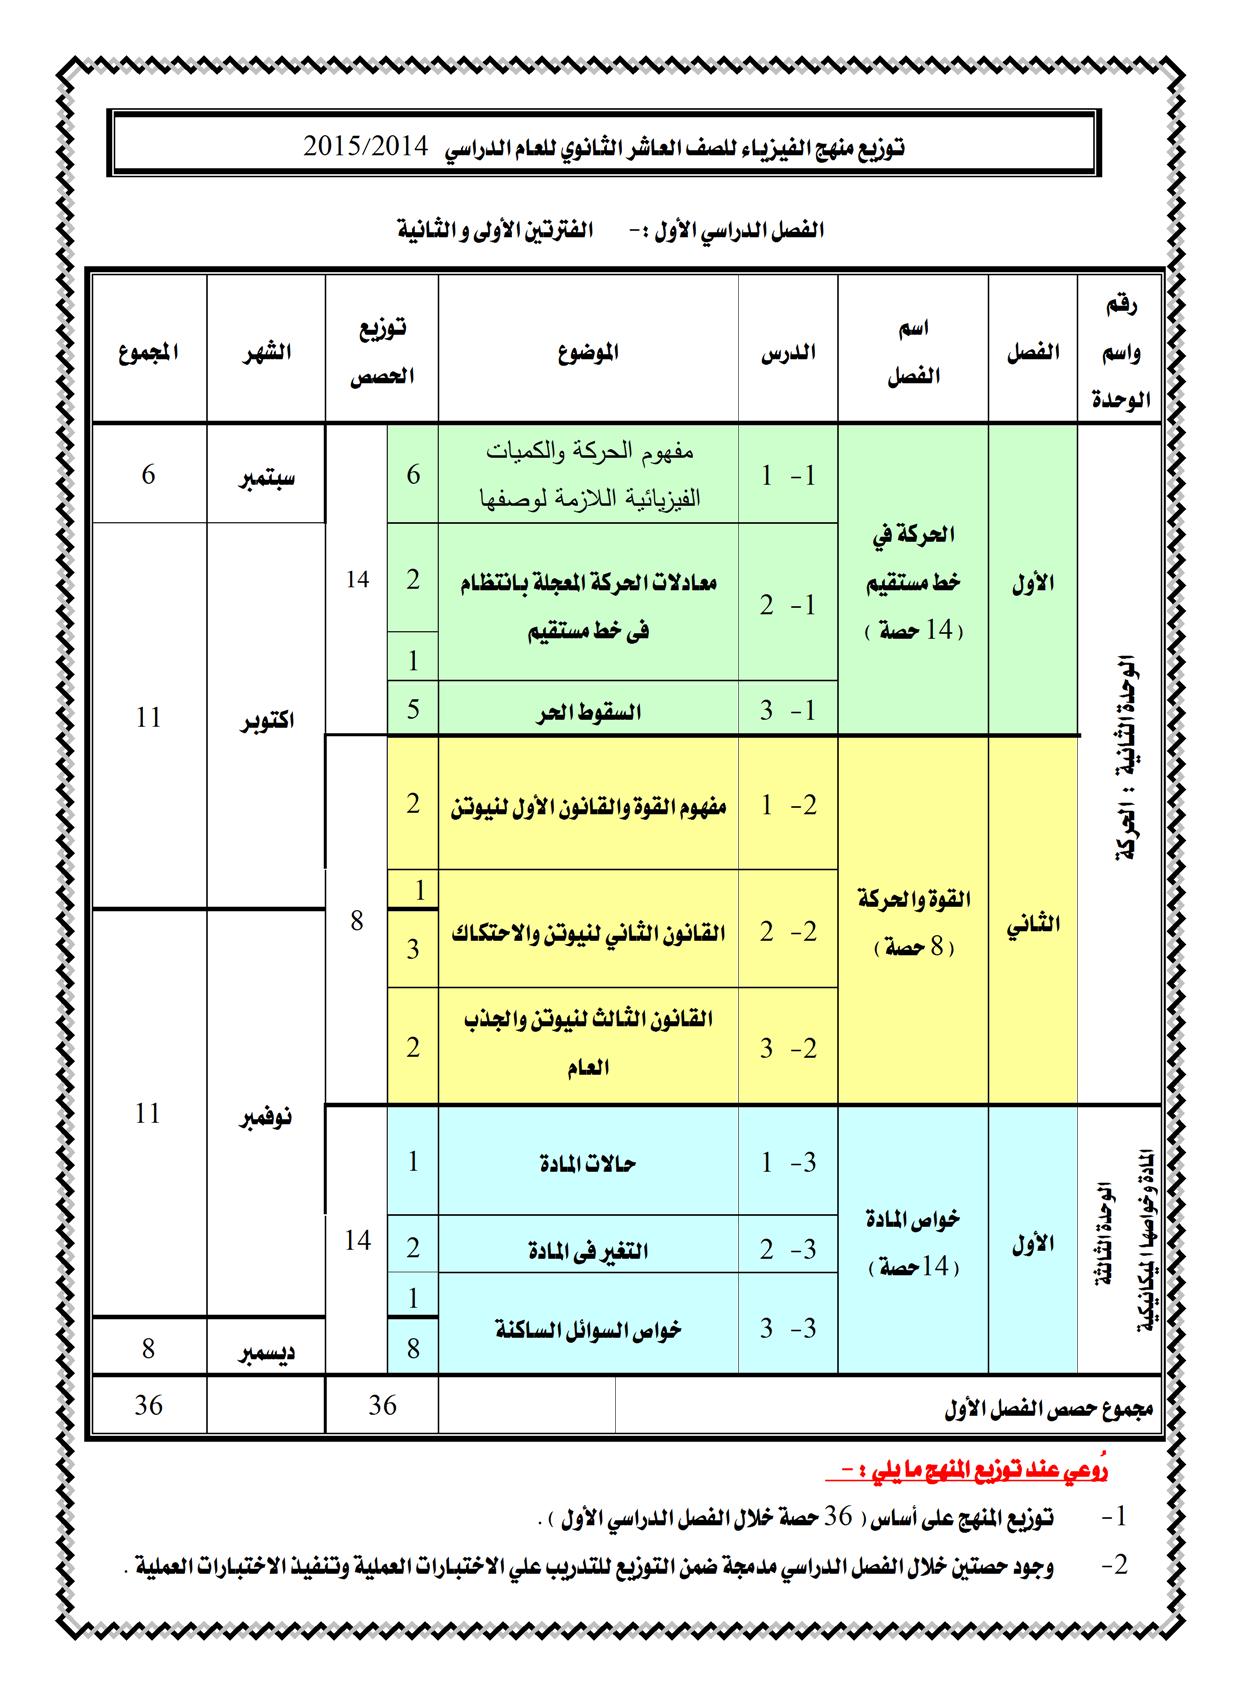 توزيع منهج الفيزياء العاشر الكويت 2015